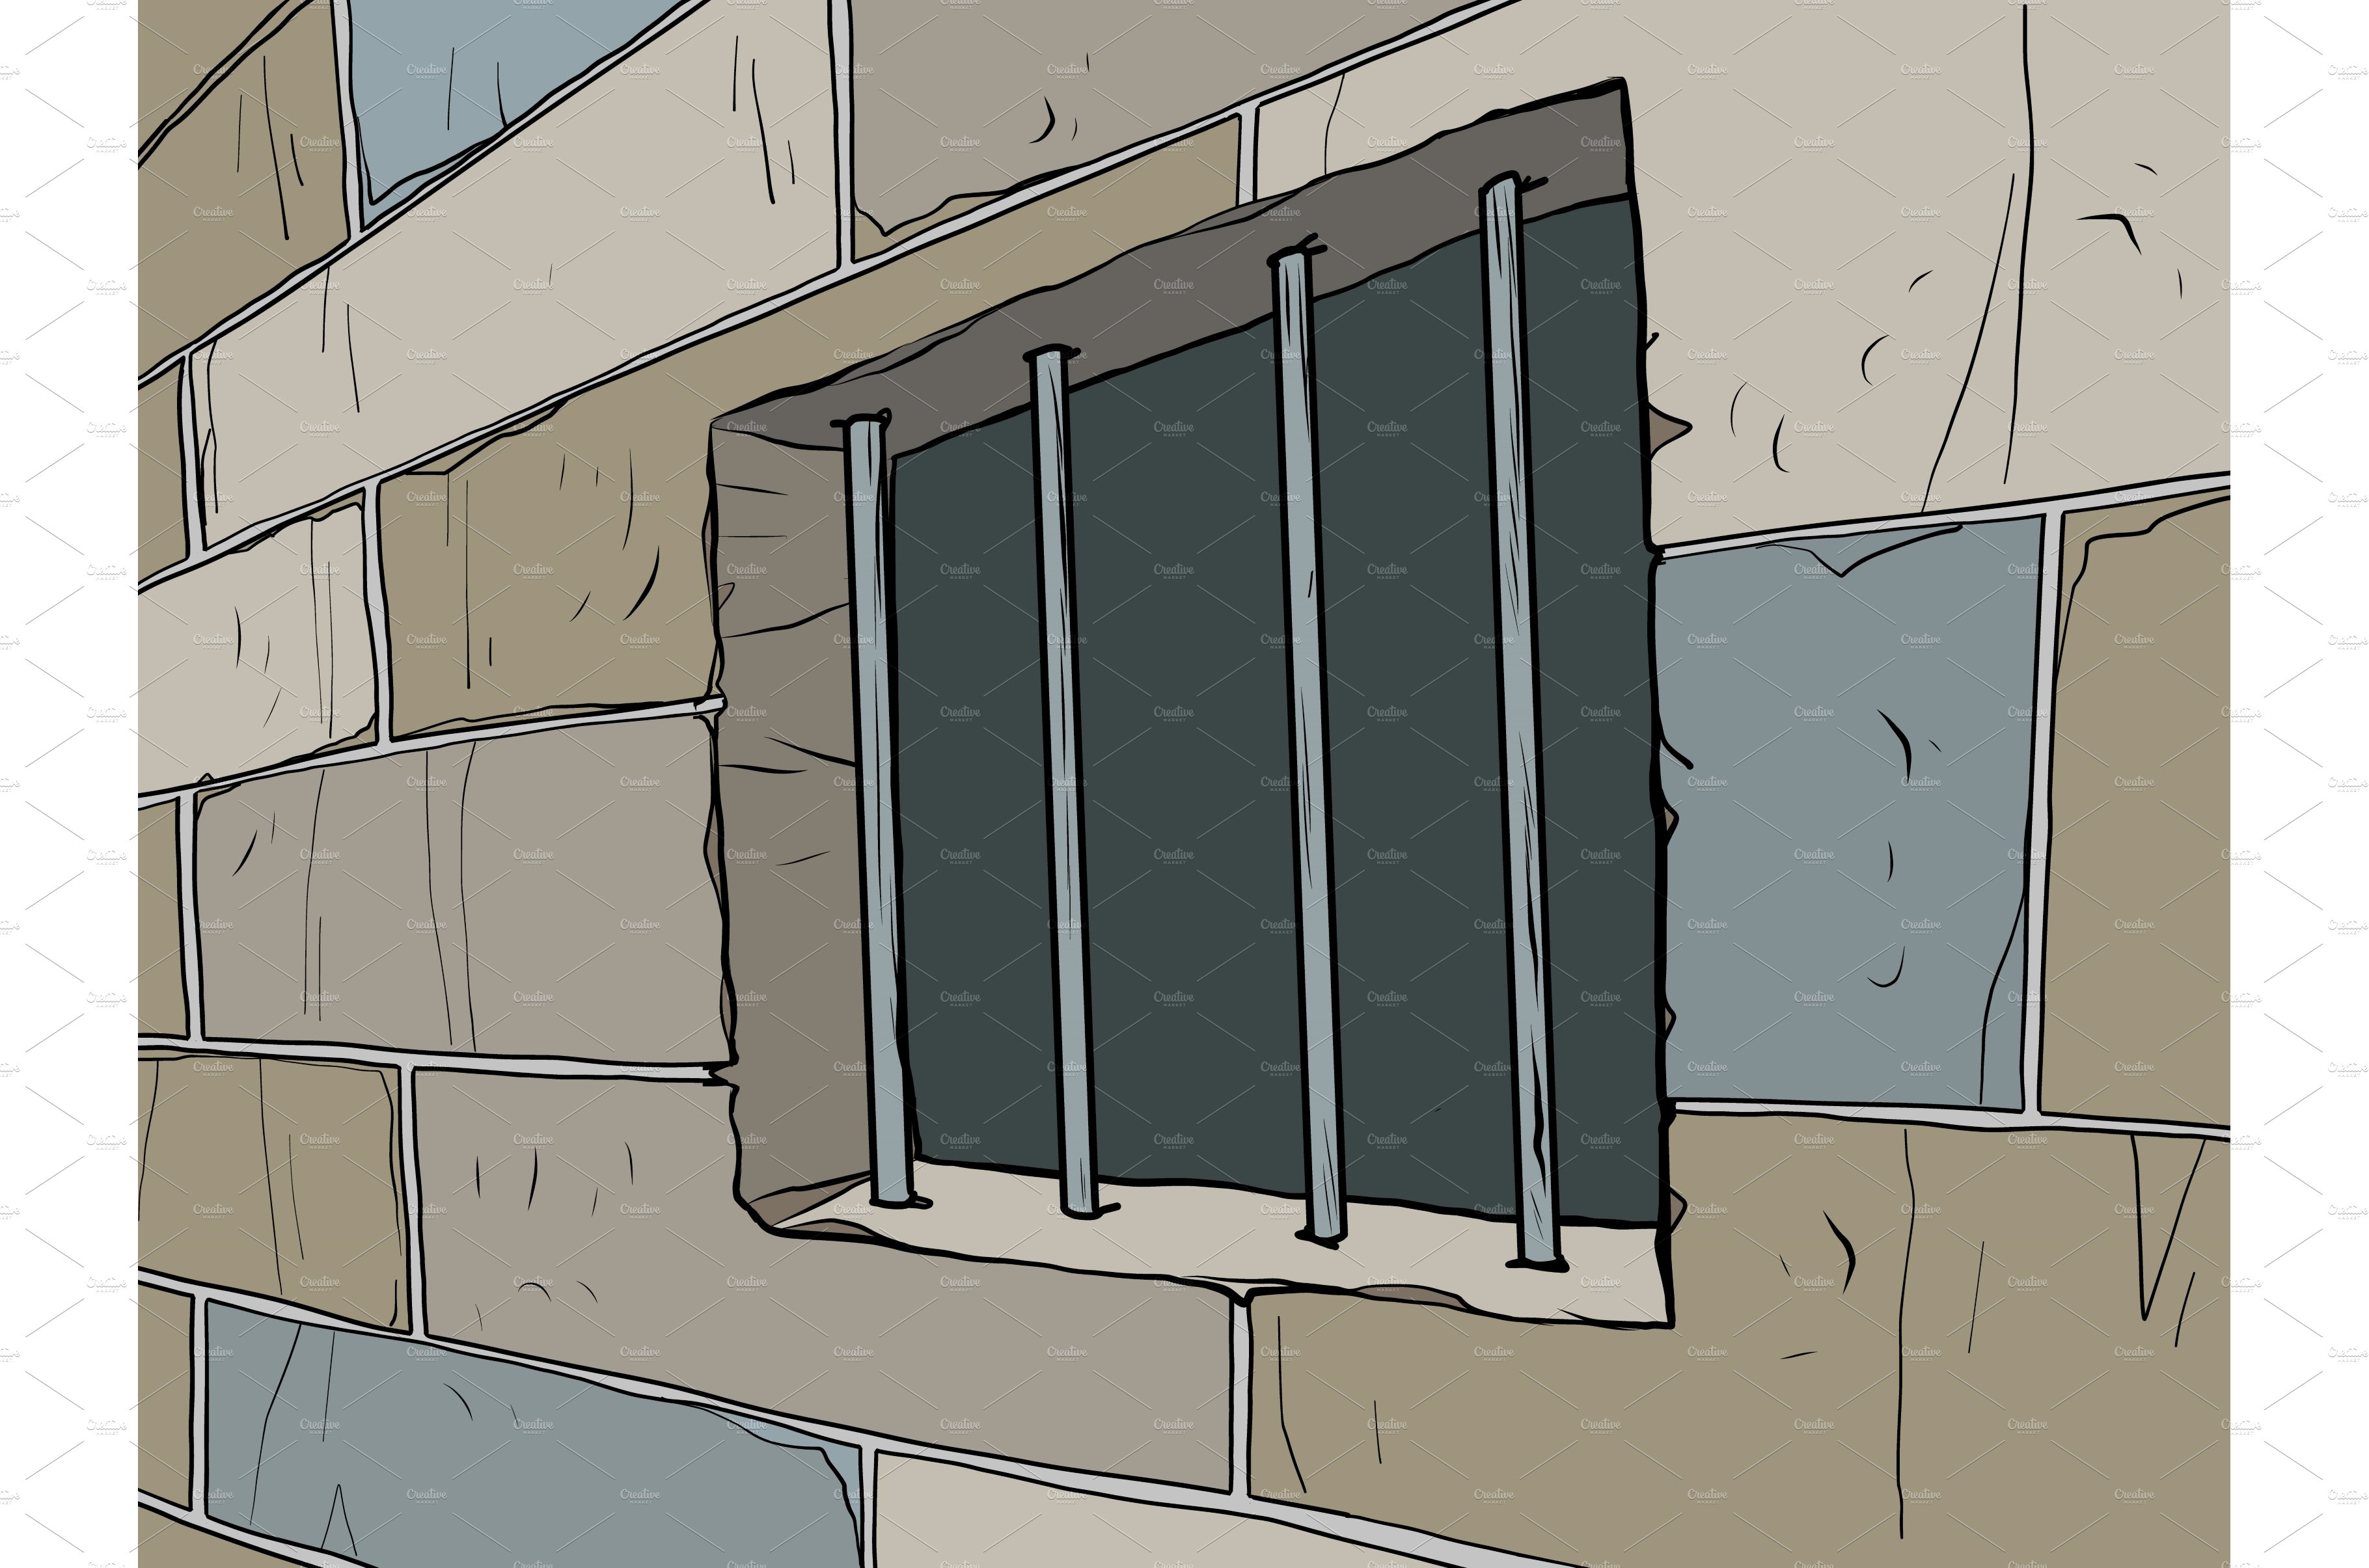 Prison window, prison bars cover image.